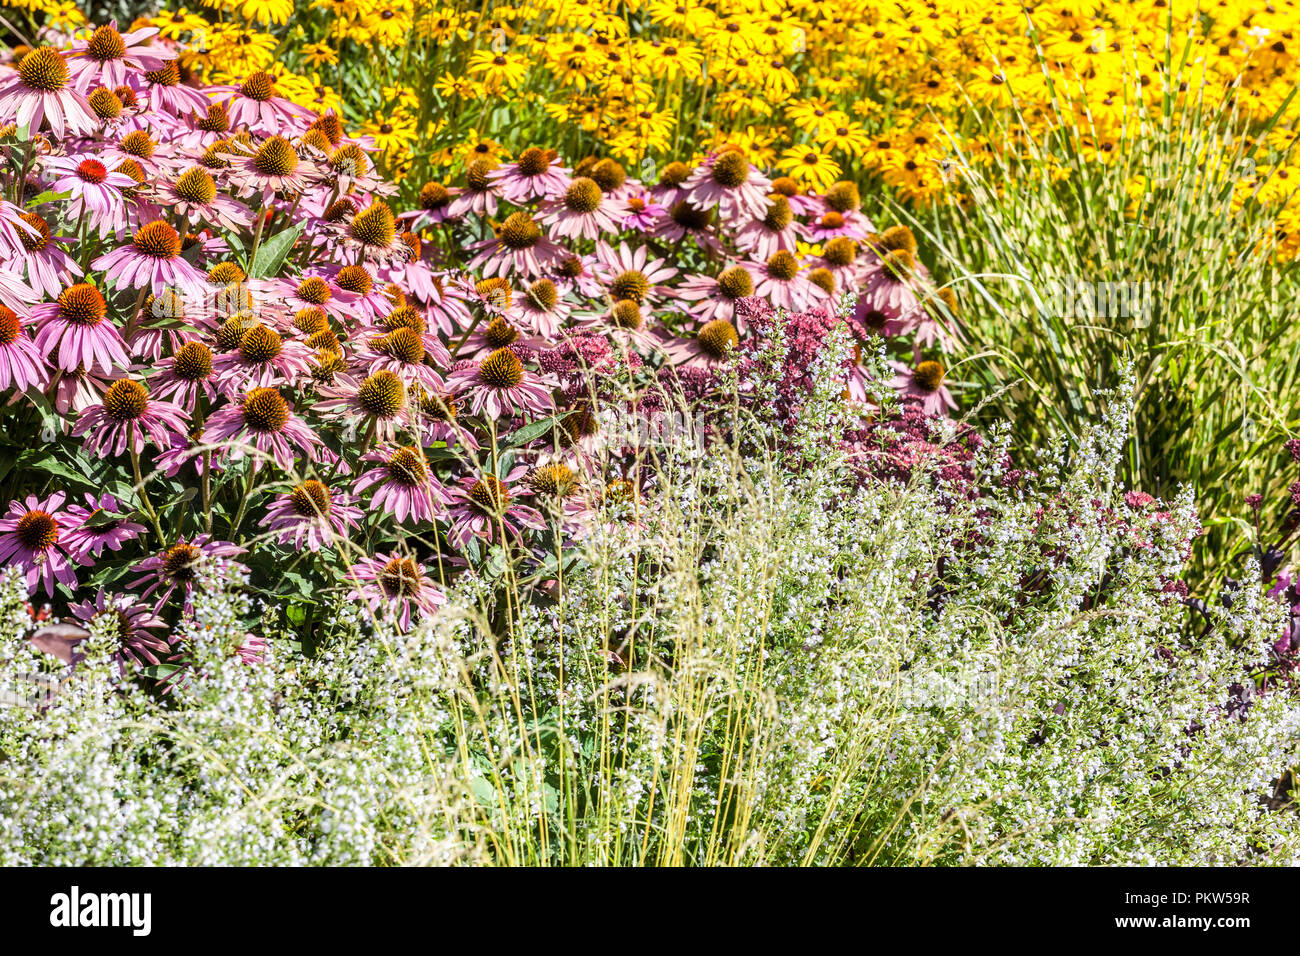 Une combinaison d'un lit de fleurs d'été dans un chalet jardin coloré, l'échinacée, Rudbeckia, herbe d'ornement Banque D'Images